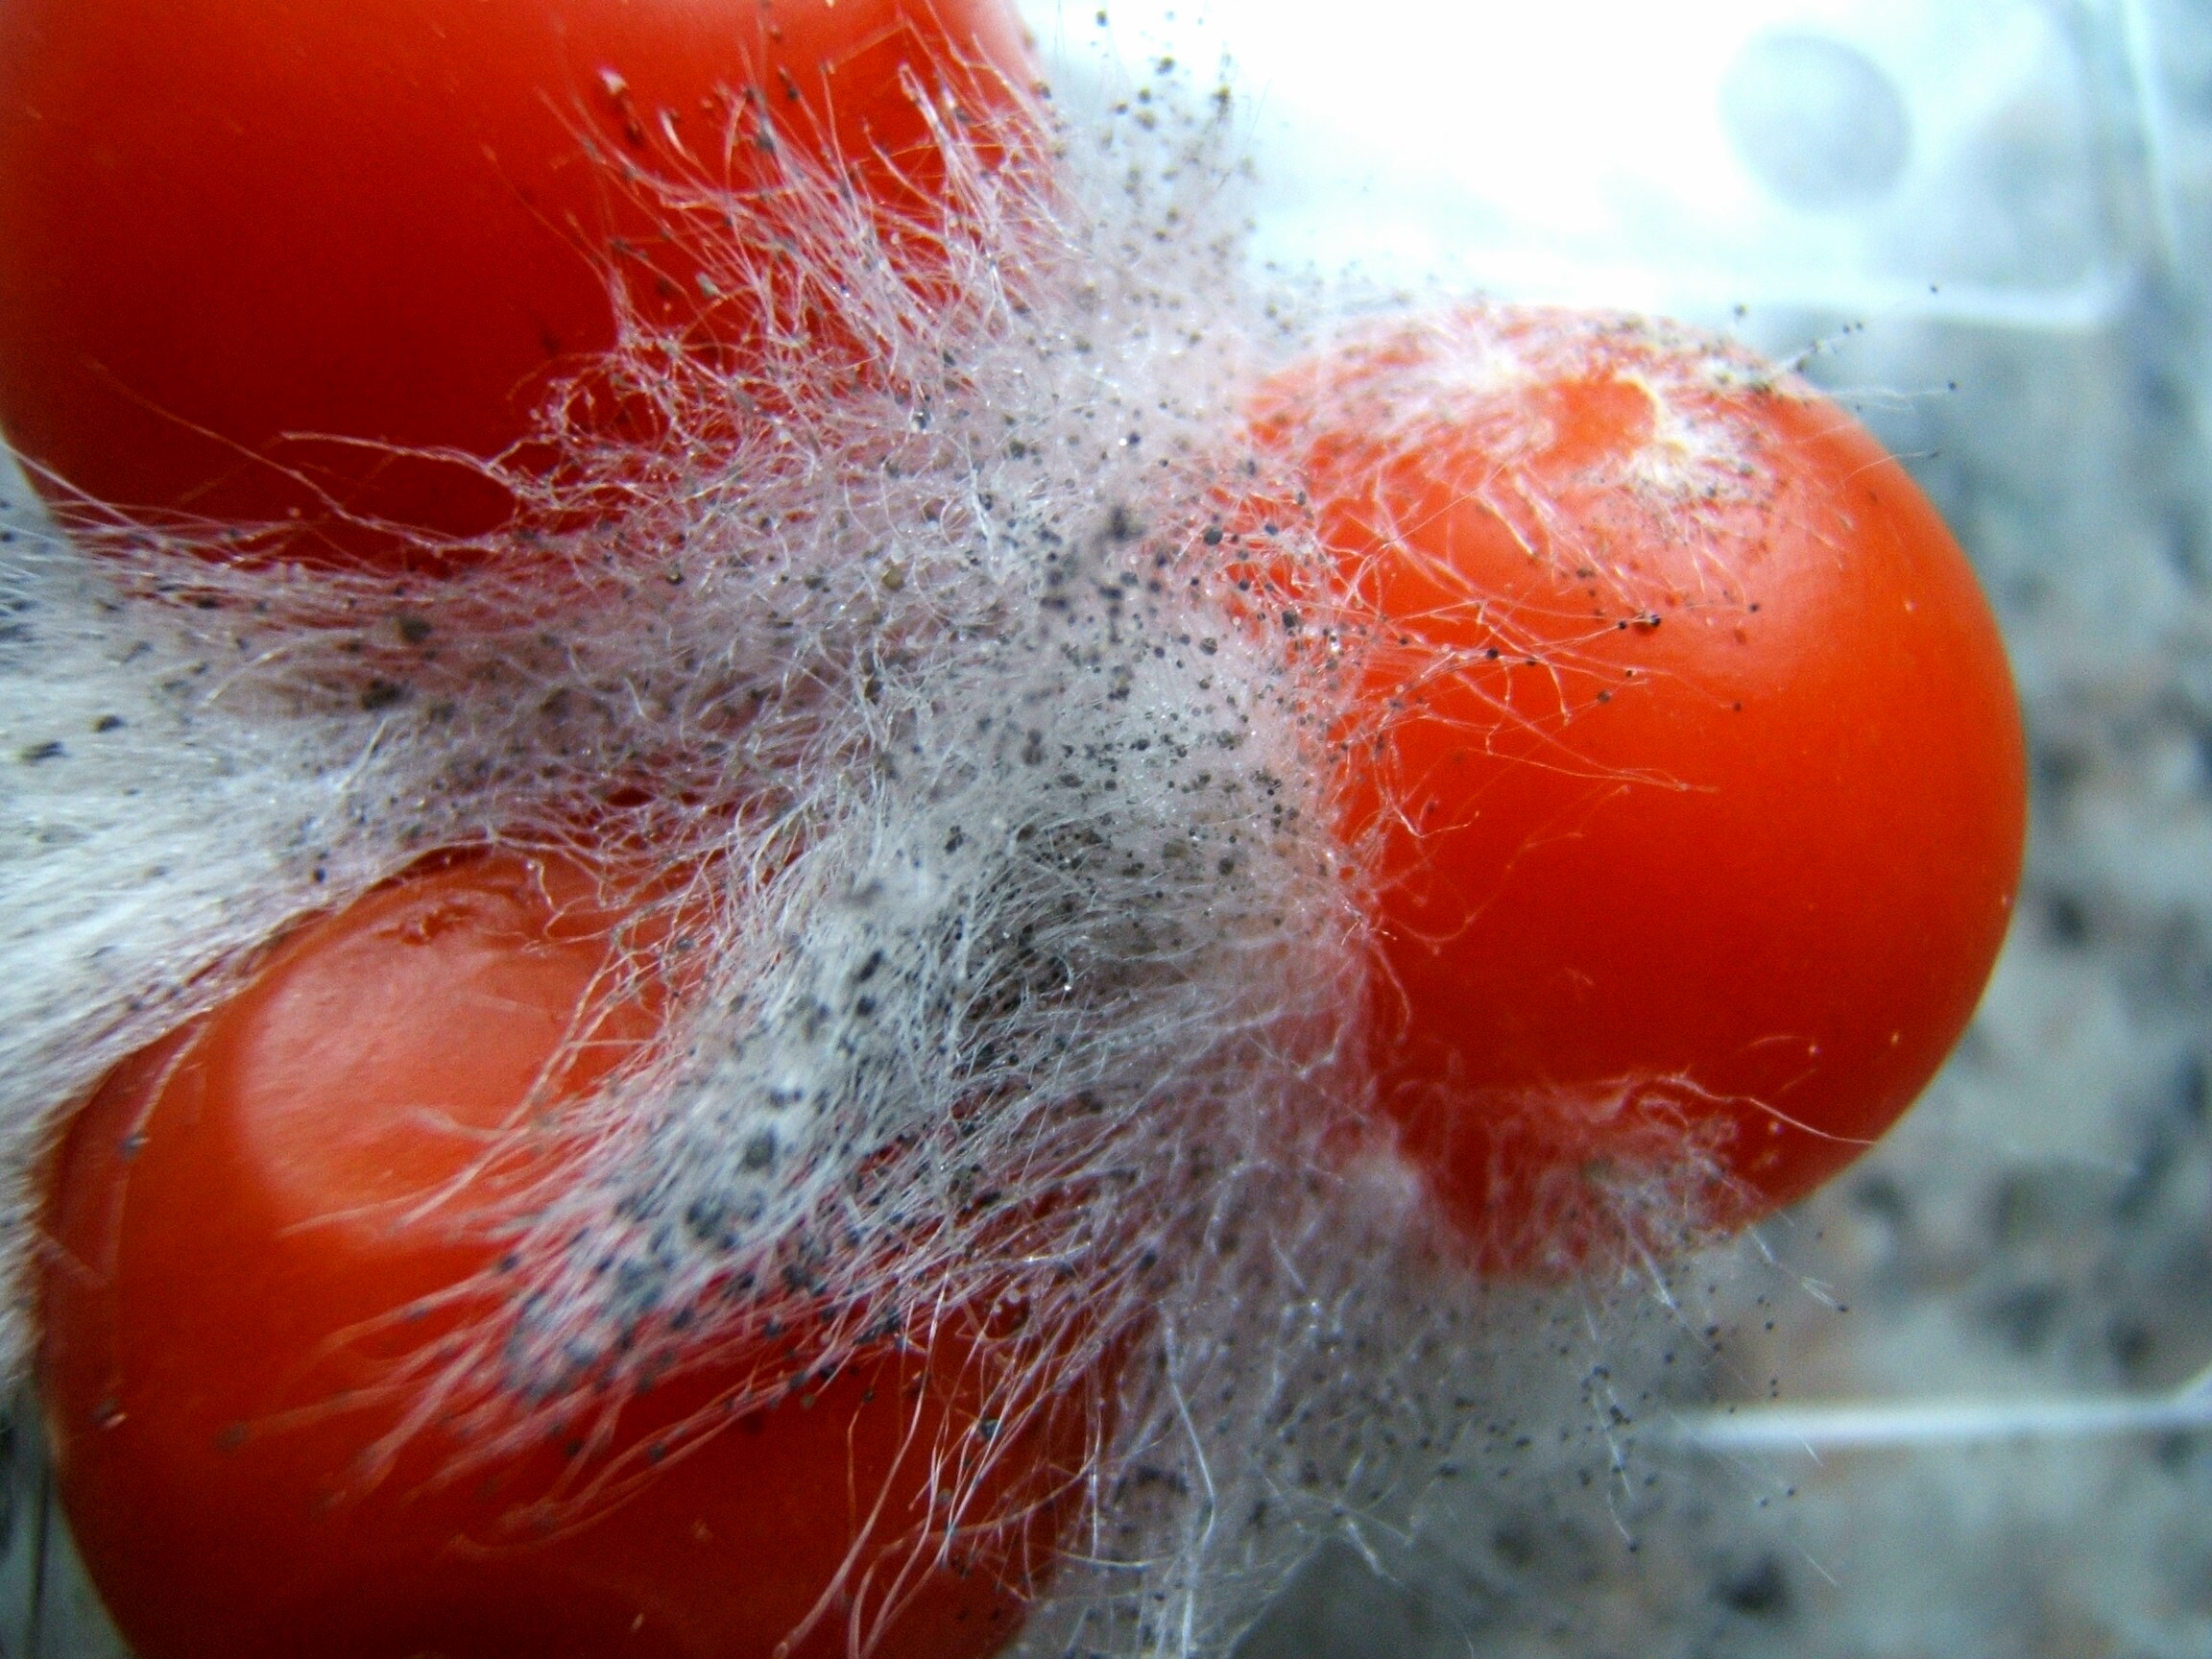 Imagen de un tomate infectado por dicho hongo. Podemos observar un gran desarrollo por las dimensiones que alcanza. Los puntos negros que se ven en la fotografía son los esporangios.